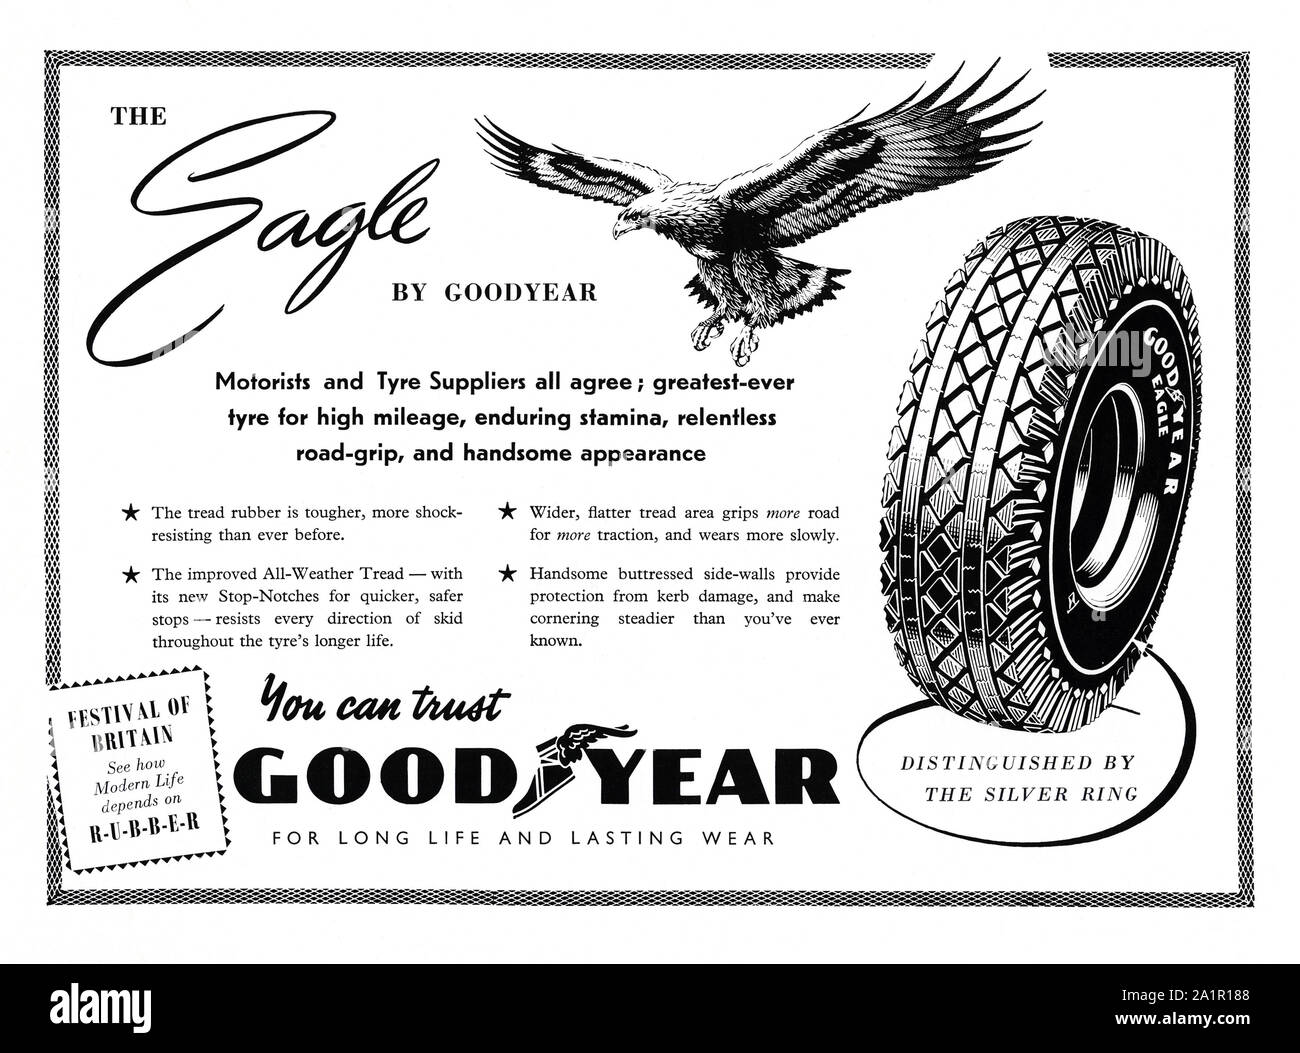 Anzeige für Adler Marke Goodyear Reifen, 1951. . Die Anzeige verfügt über  eine Abbildung eines Adlers. Der Goodyear Reifen und Gummi Unternehmen ist  eine US-amerikanische multinationale Reifen (Reifen) Manufacturing Company  gegründet 1898